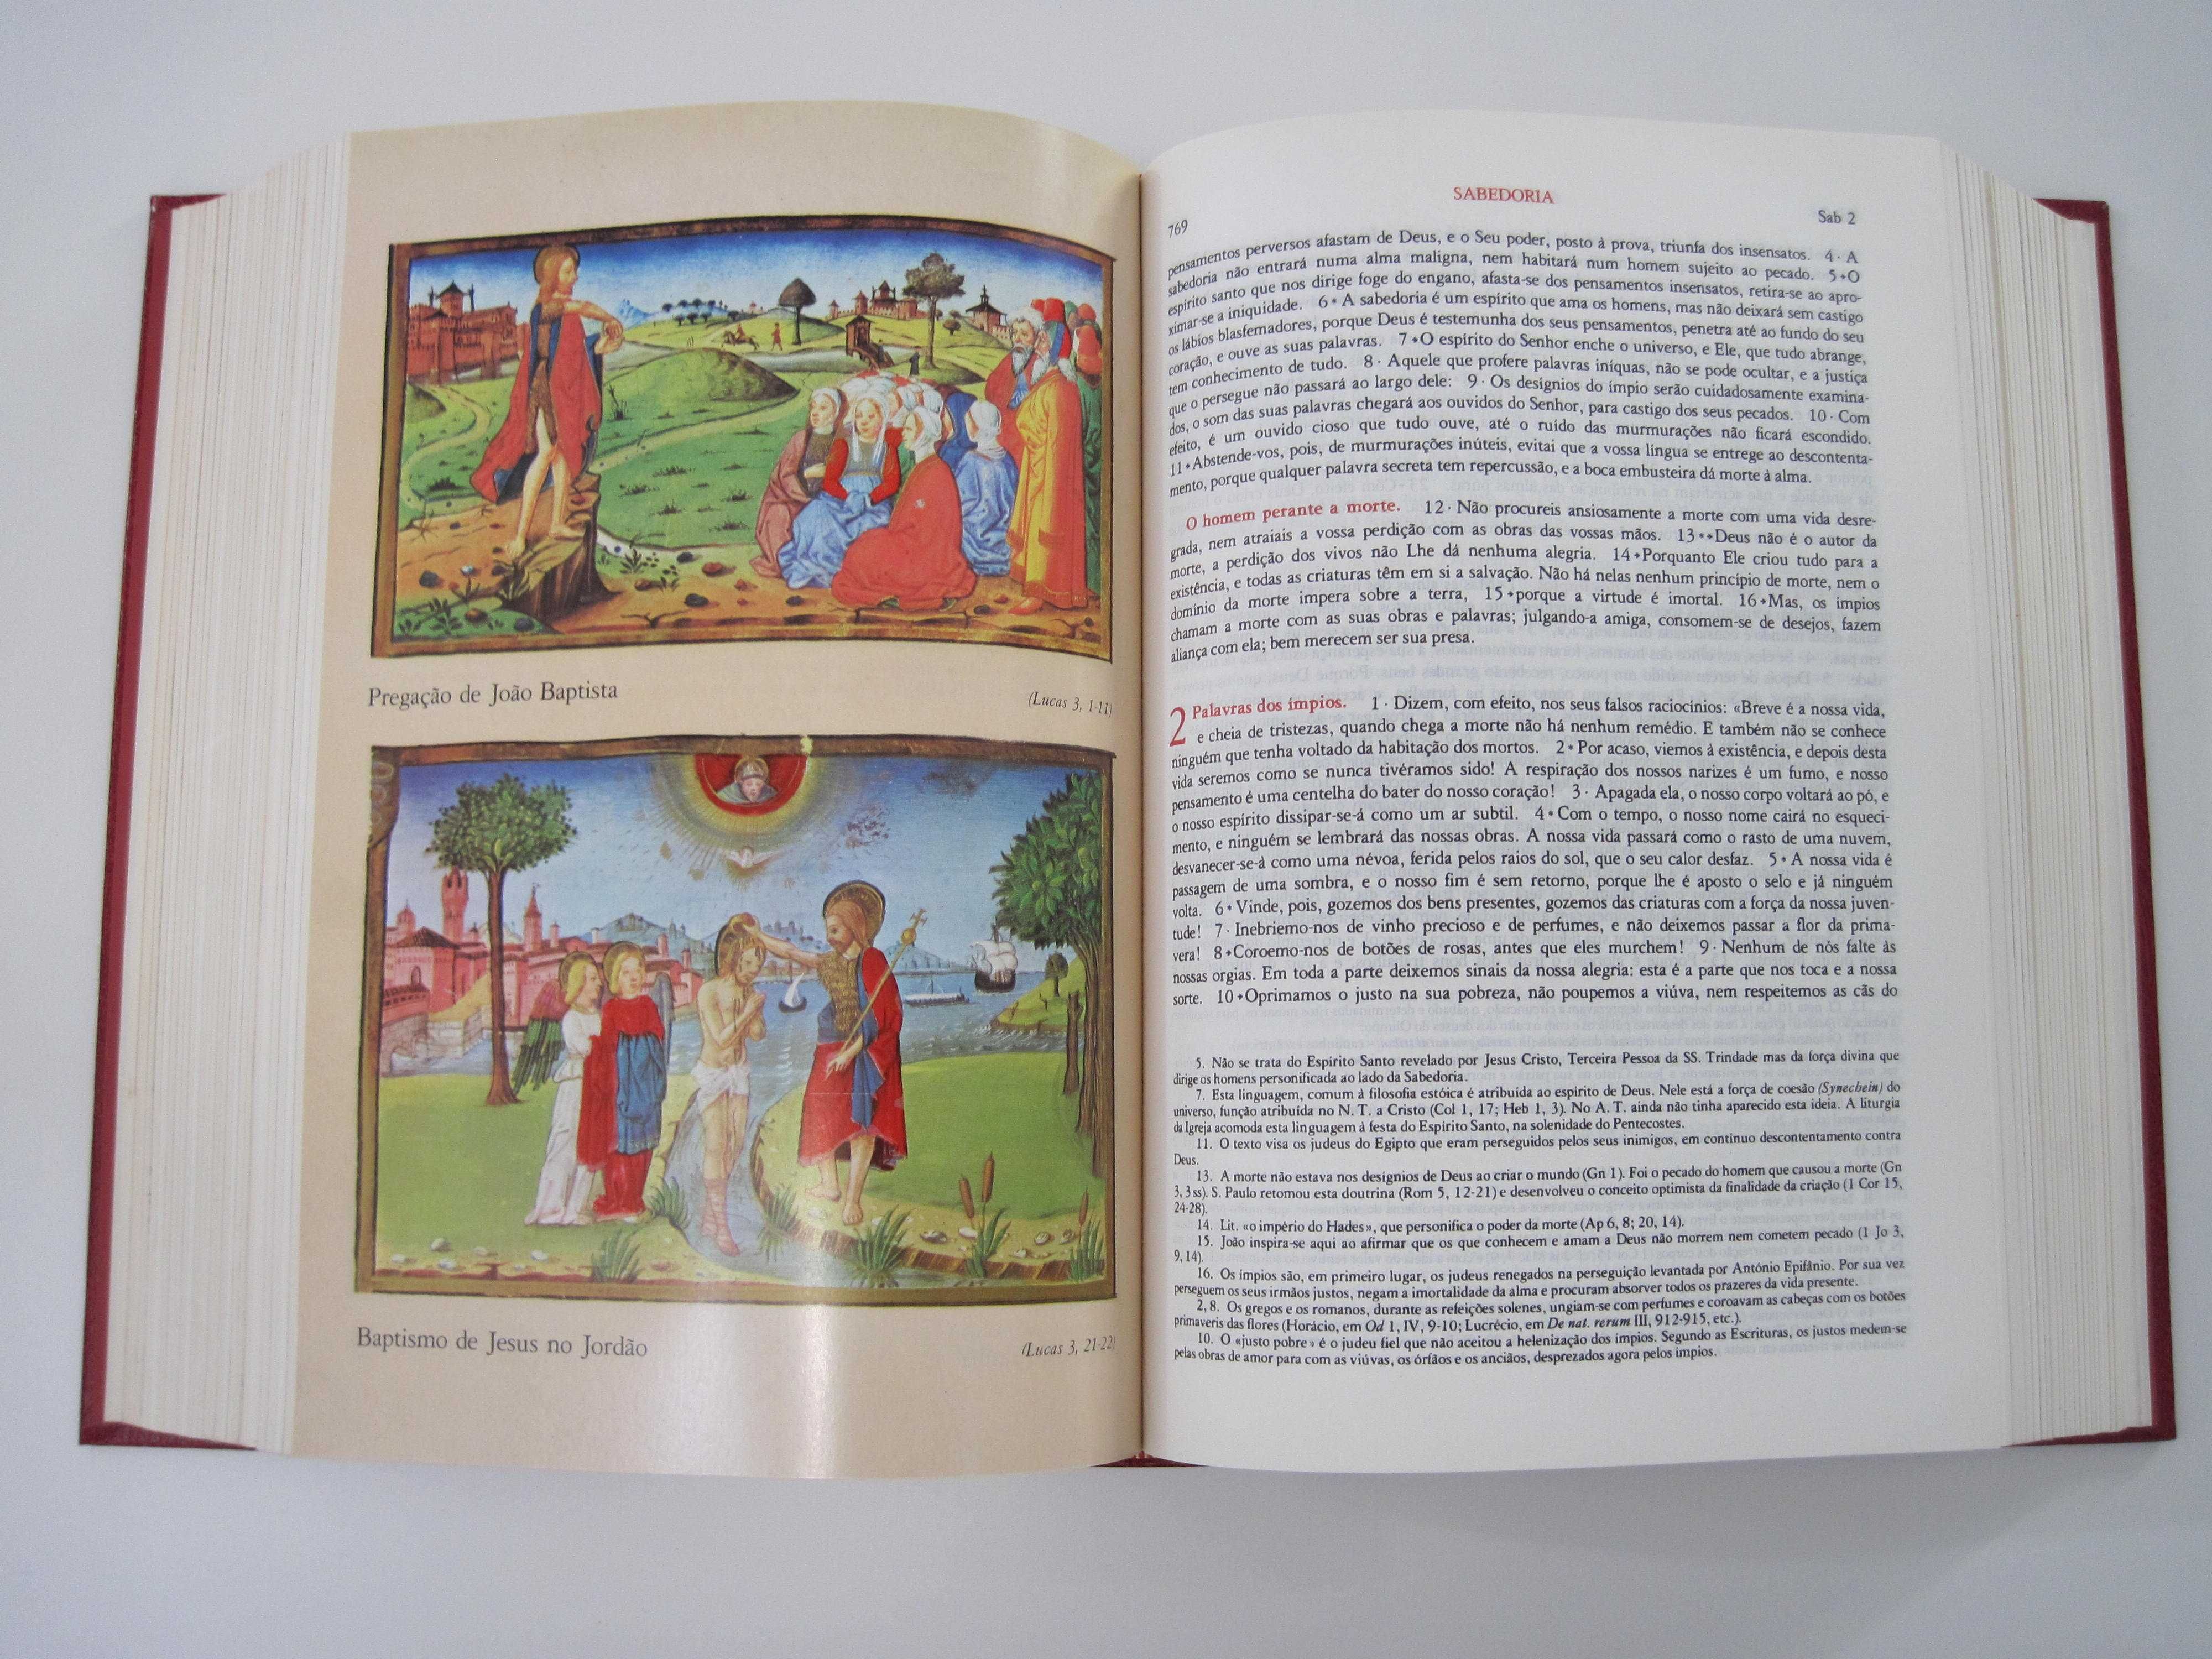 Bíblia Sagrada Ilustrada - edição comemorativa visita João Paulo II.